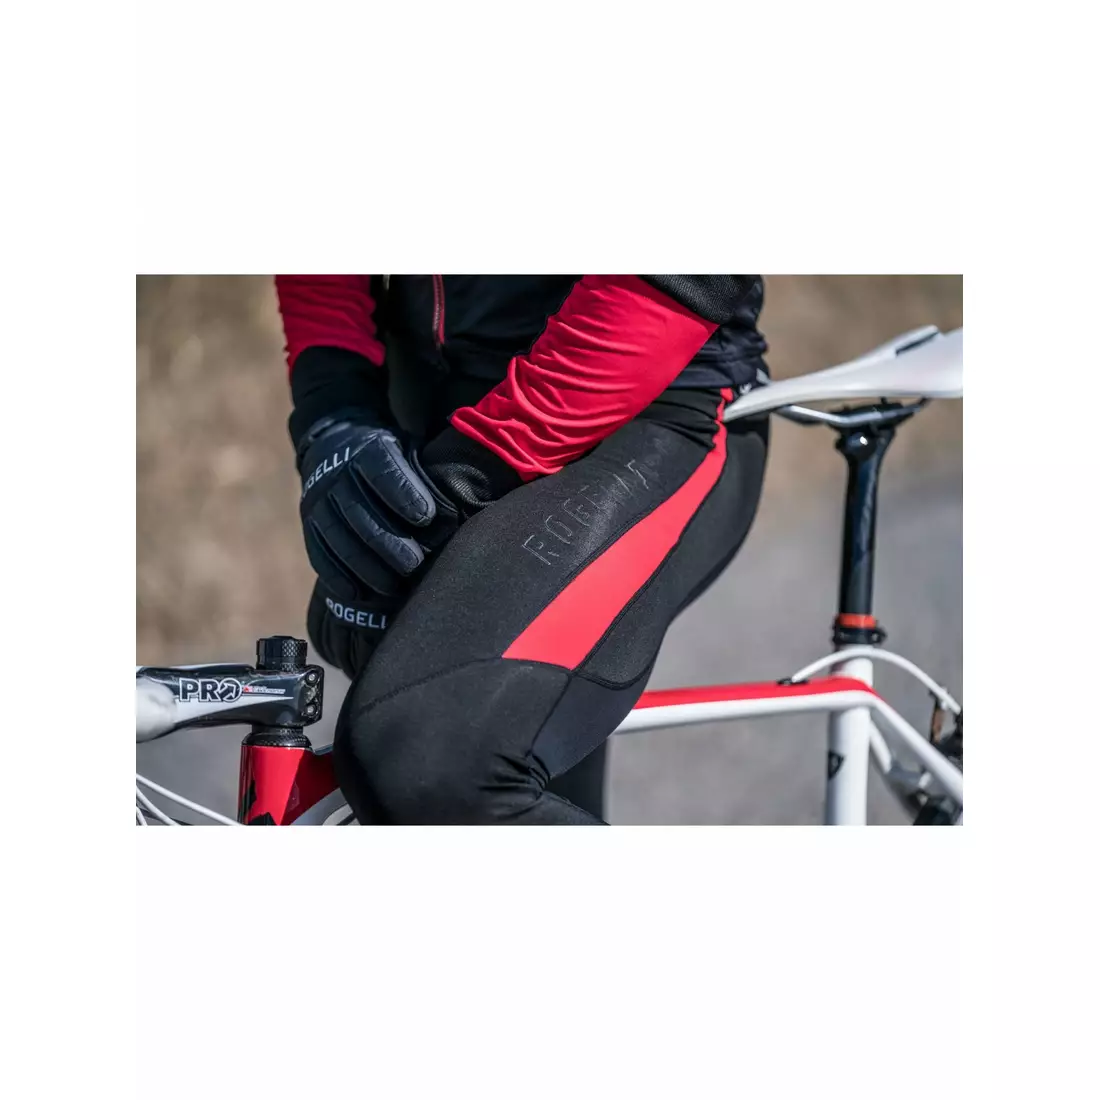 Rogelli STEALTH neizolované cyklistické kalhoty se šlemi, gelová vložka, červená 002.353